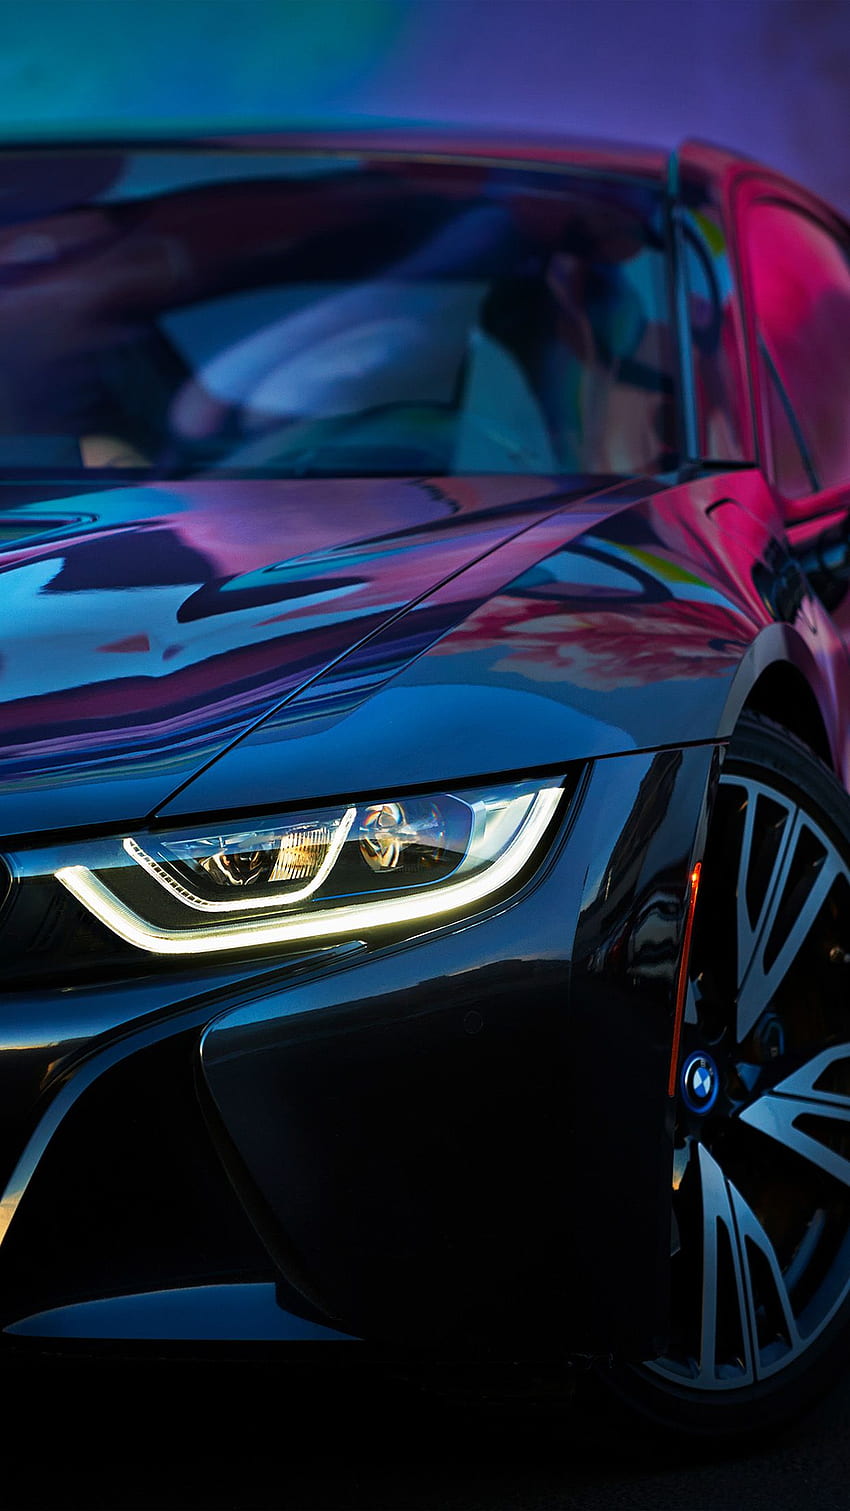 Tác phẩm nghệ thuật ô tô BMW guồng quay với gam màu cầu vồng tuyệt đẹp, hứa hẹn sẽ làm hài lòng các tín đồ yêu thích thể hiện đẳng cấp của mình. 